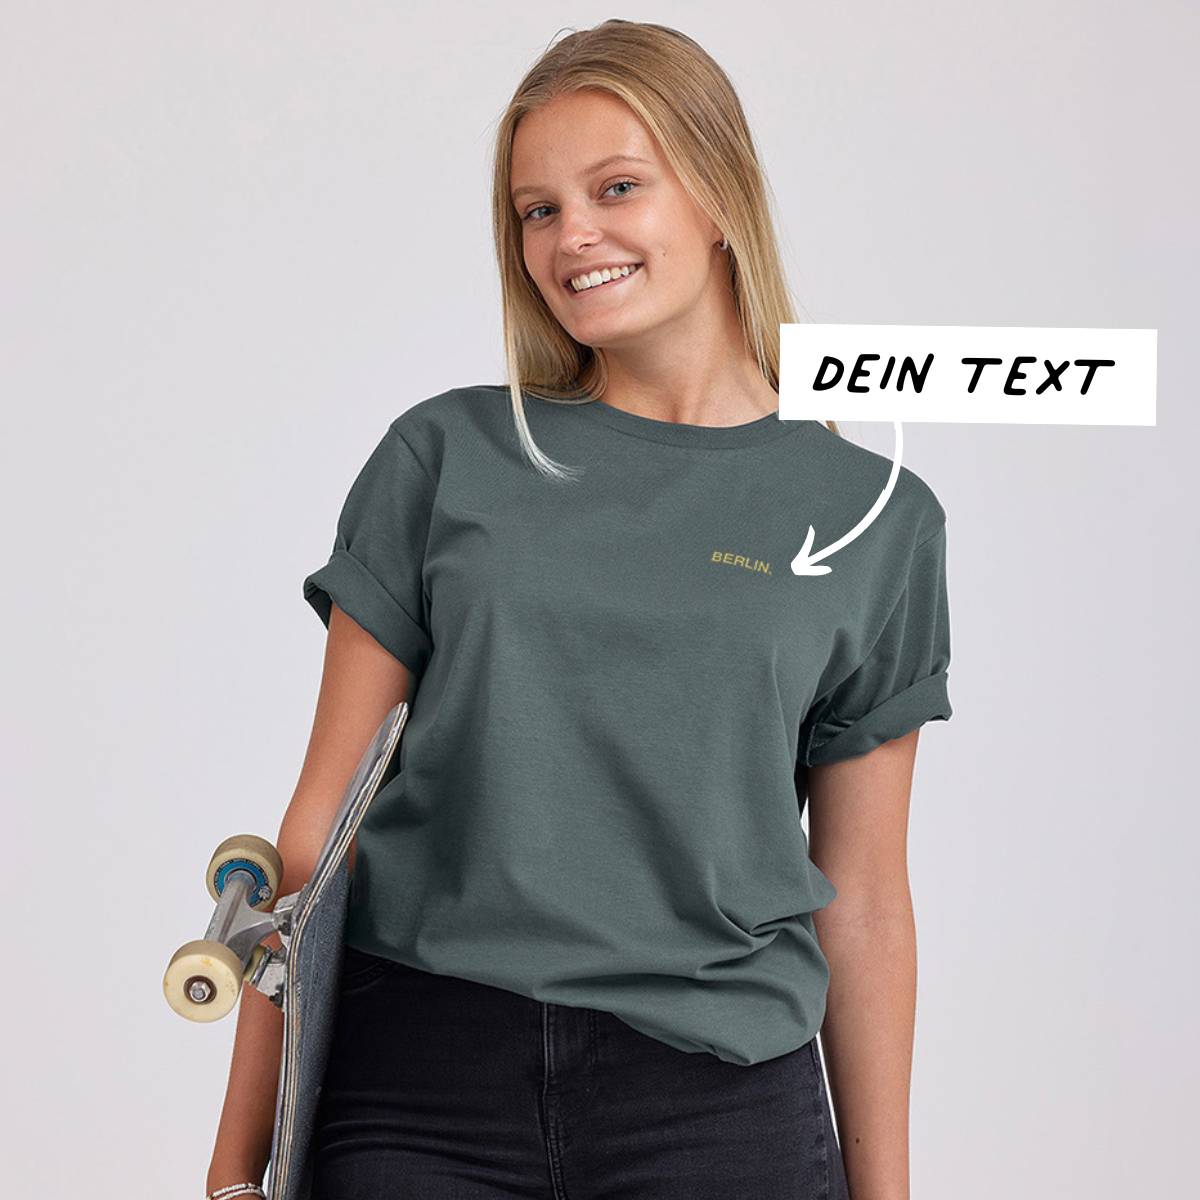 Geschenke für Frauen besticktes Tshirt mit Text